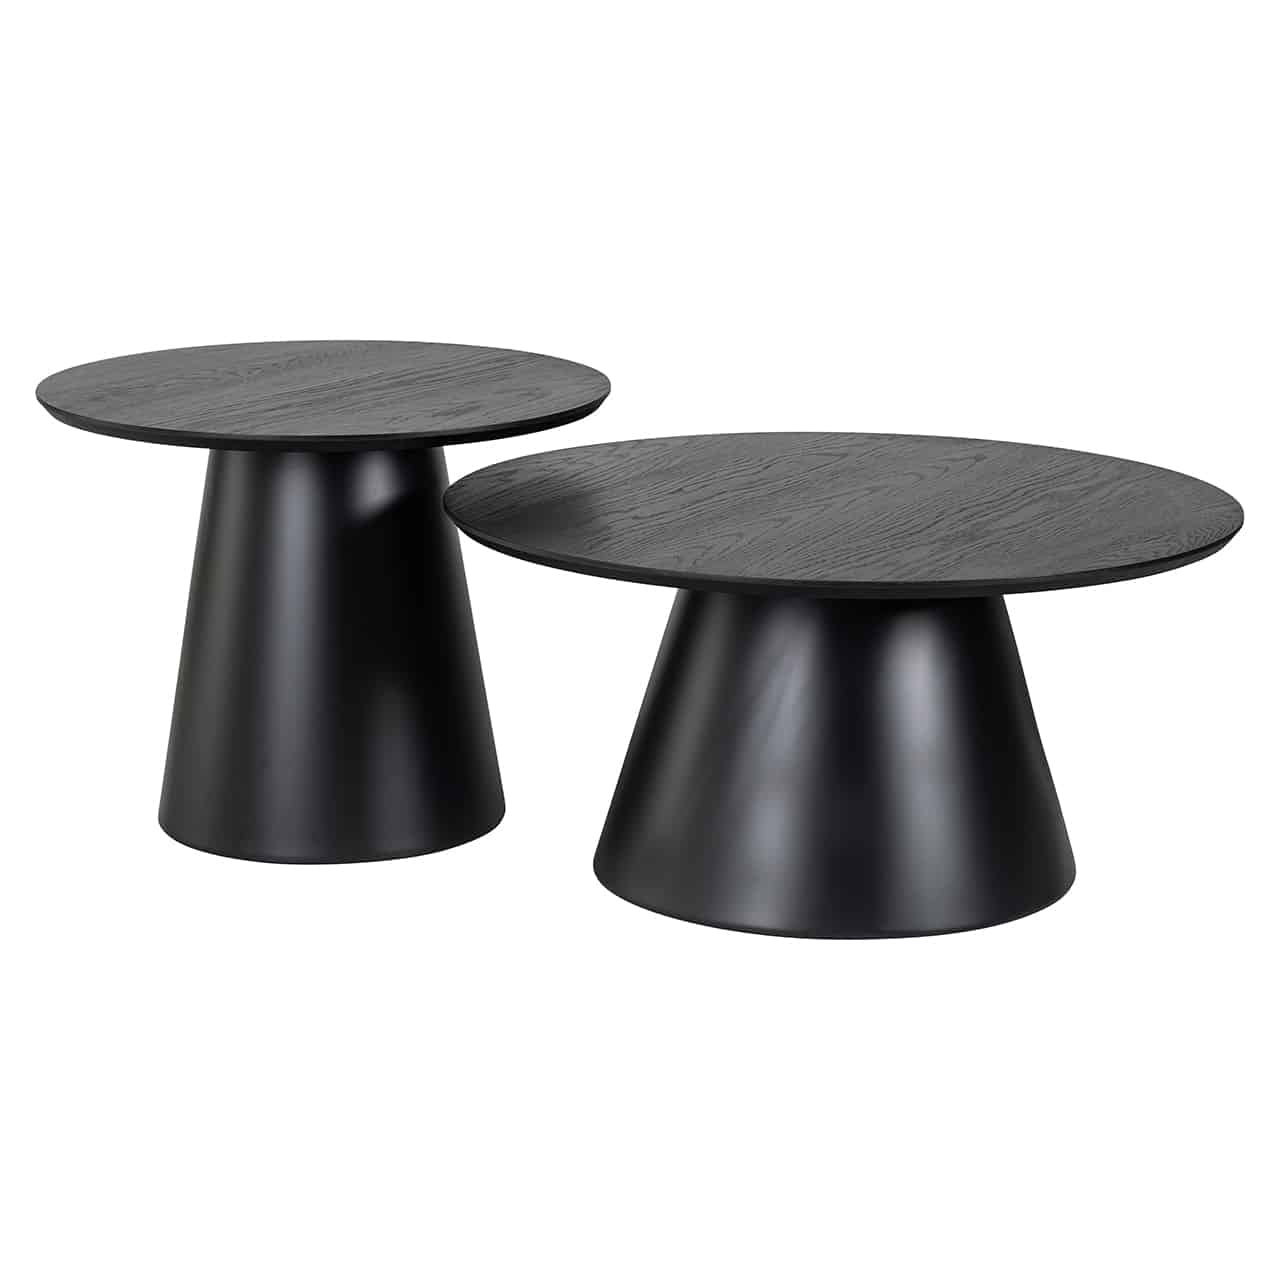 Couchtisch Set; zwei verschieden hohe Tische im Design eines abgeschnittenen Kegels, auf dem jeweils eine verschieden große runde Tischplatte angebracht ist; der höhere Tisch mit kleinerer, der niedrigere mit größerer Tischplatte.